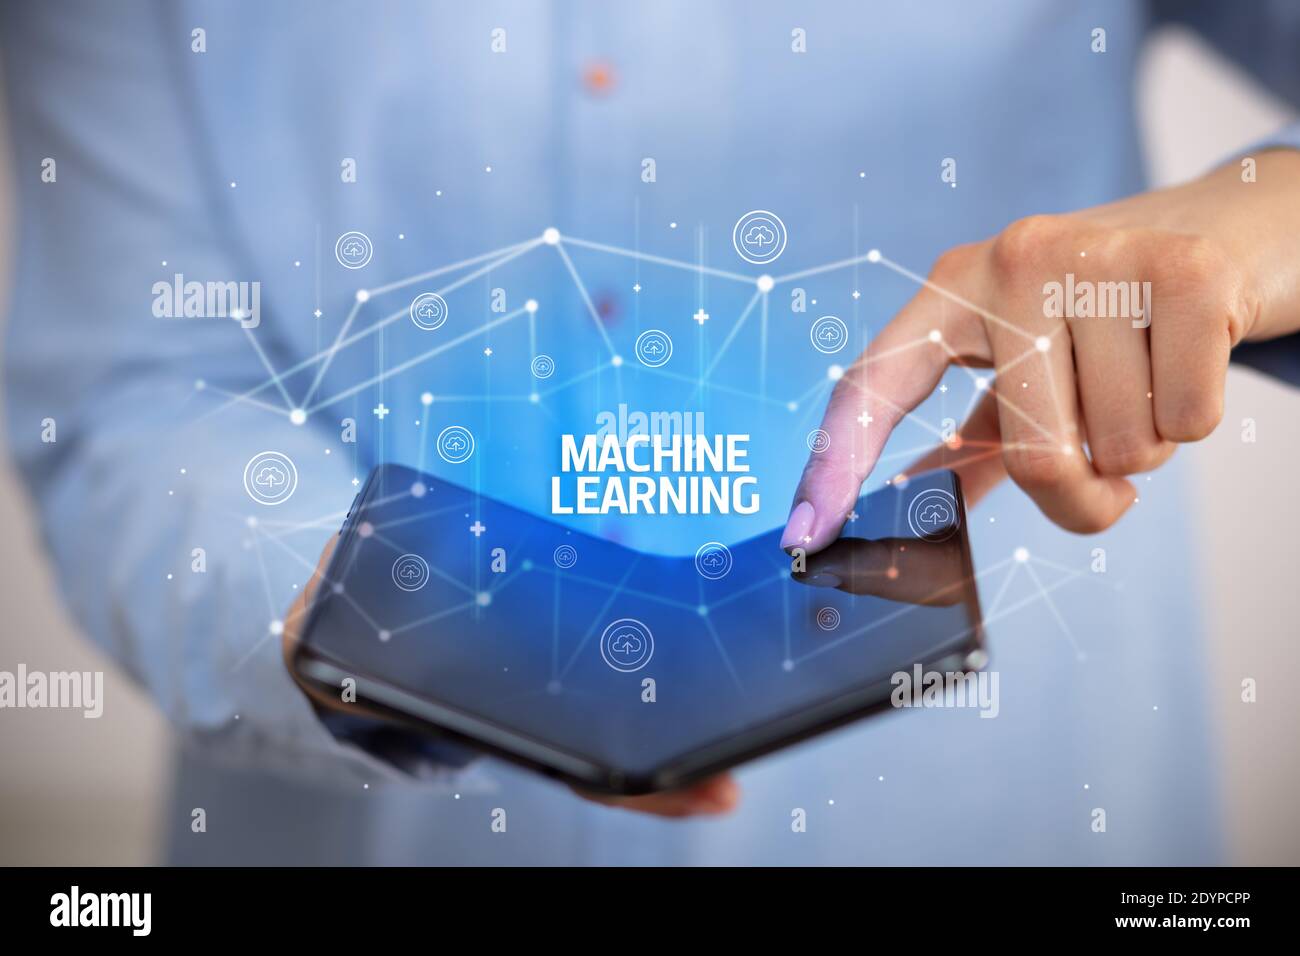 Empresario sosteniendo un smartphone plegable con inscripción de Machine Learning, nuevo concepto tecnológico Foto de stock